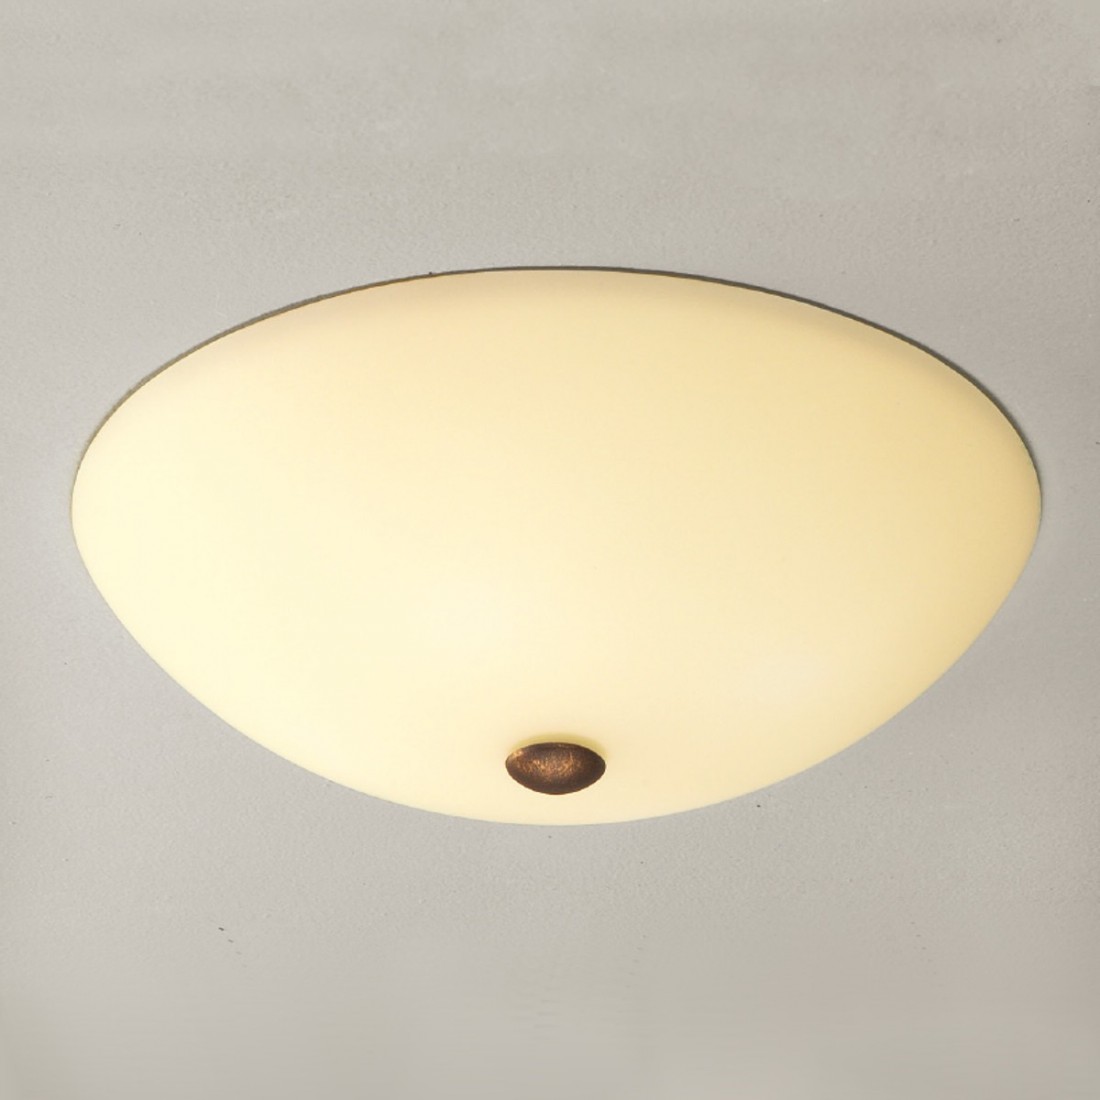 Plafoniera LM-3460 E27 LED classica vetro crema bianco satinato lampada soffitto interni